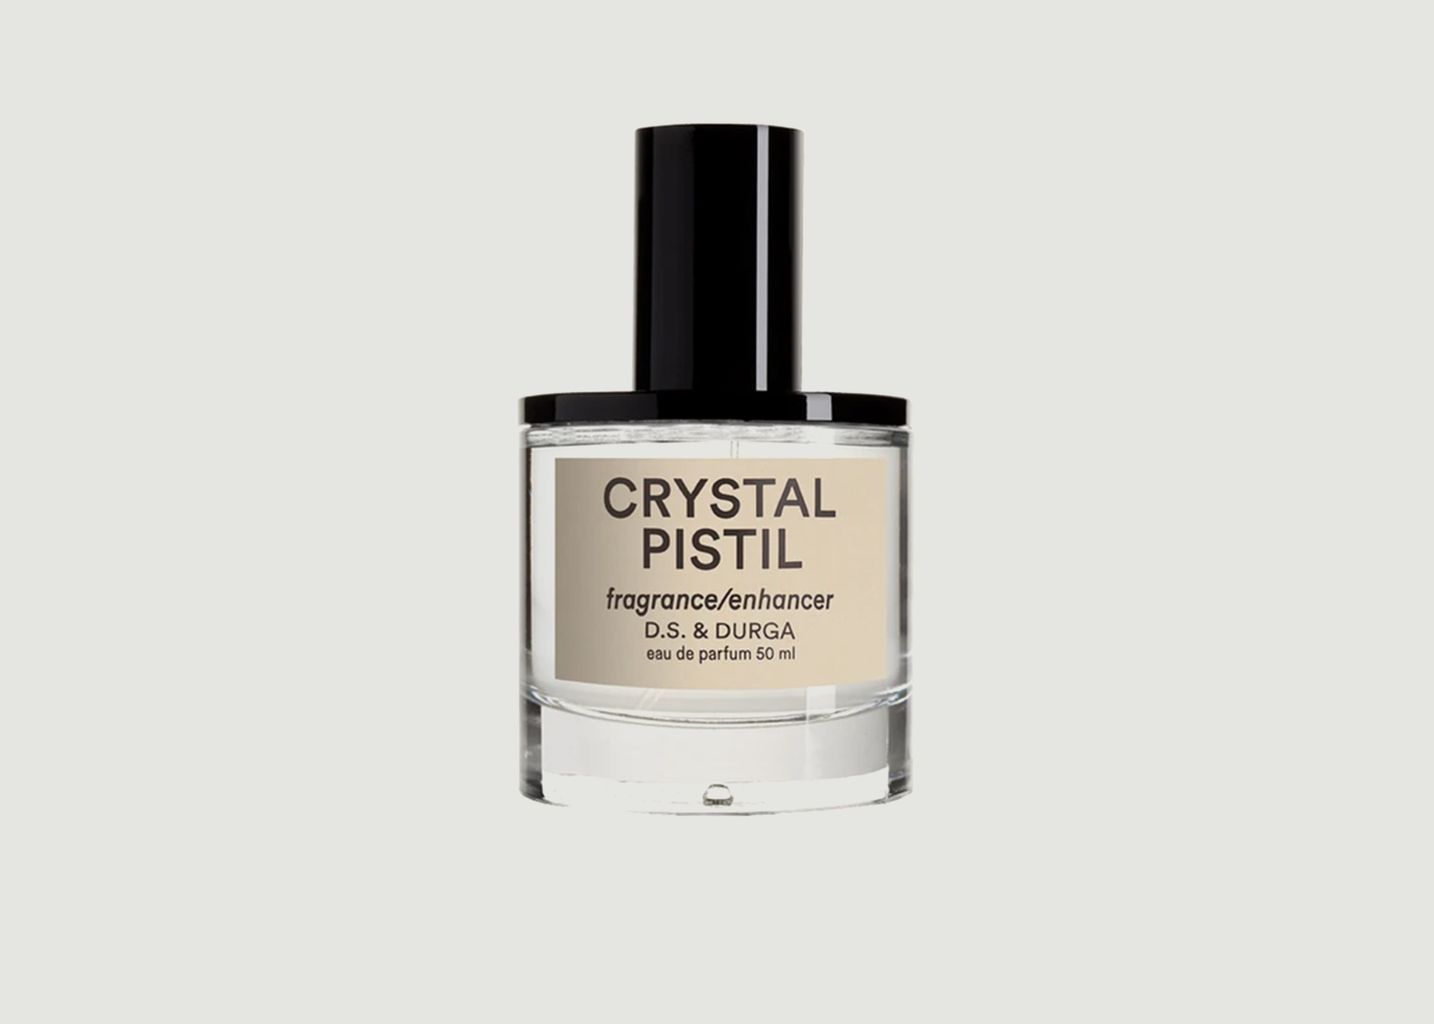 Eau de parfum Crystal Pistil 50ml - D.S. & DURGA